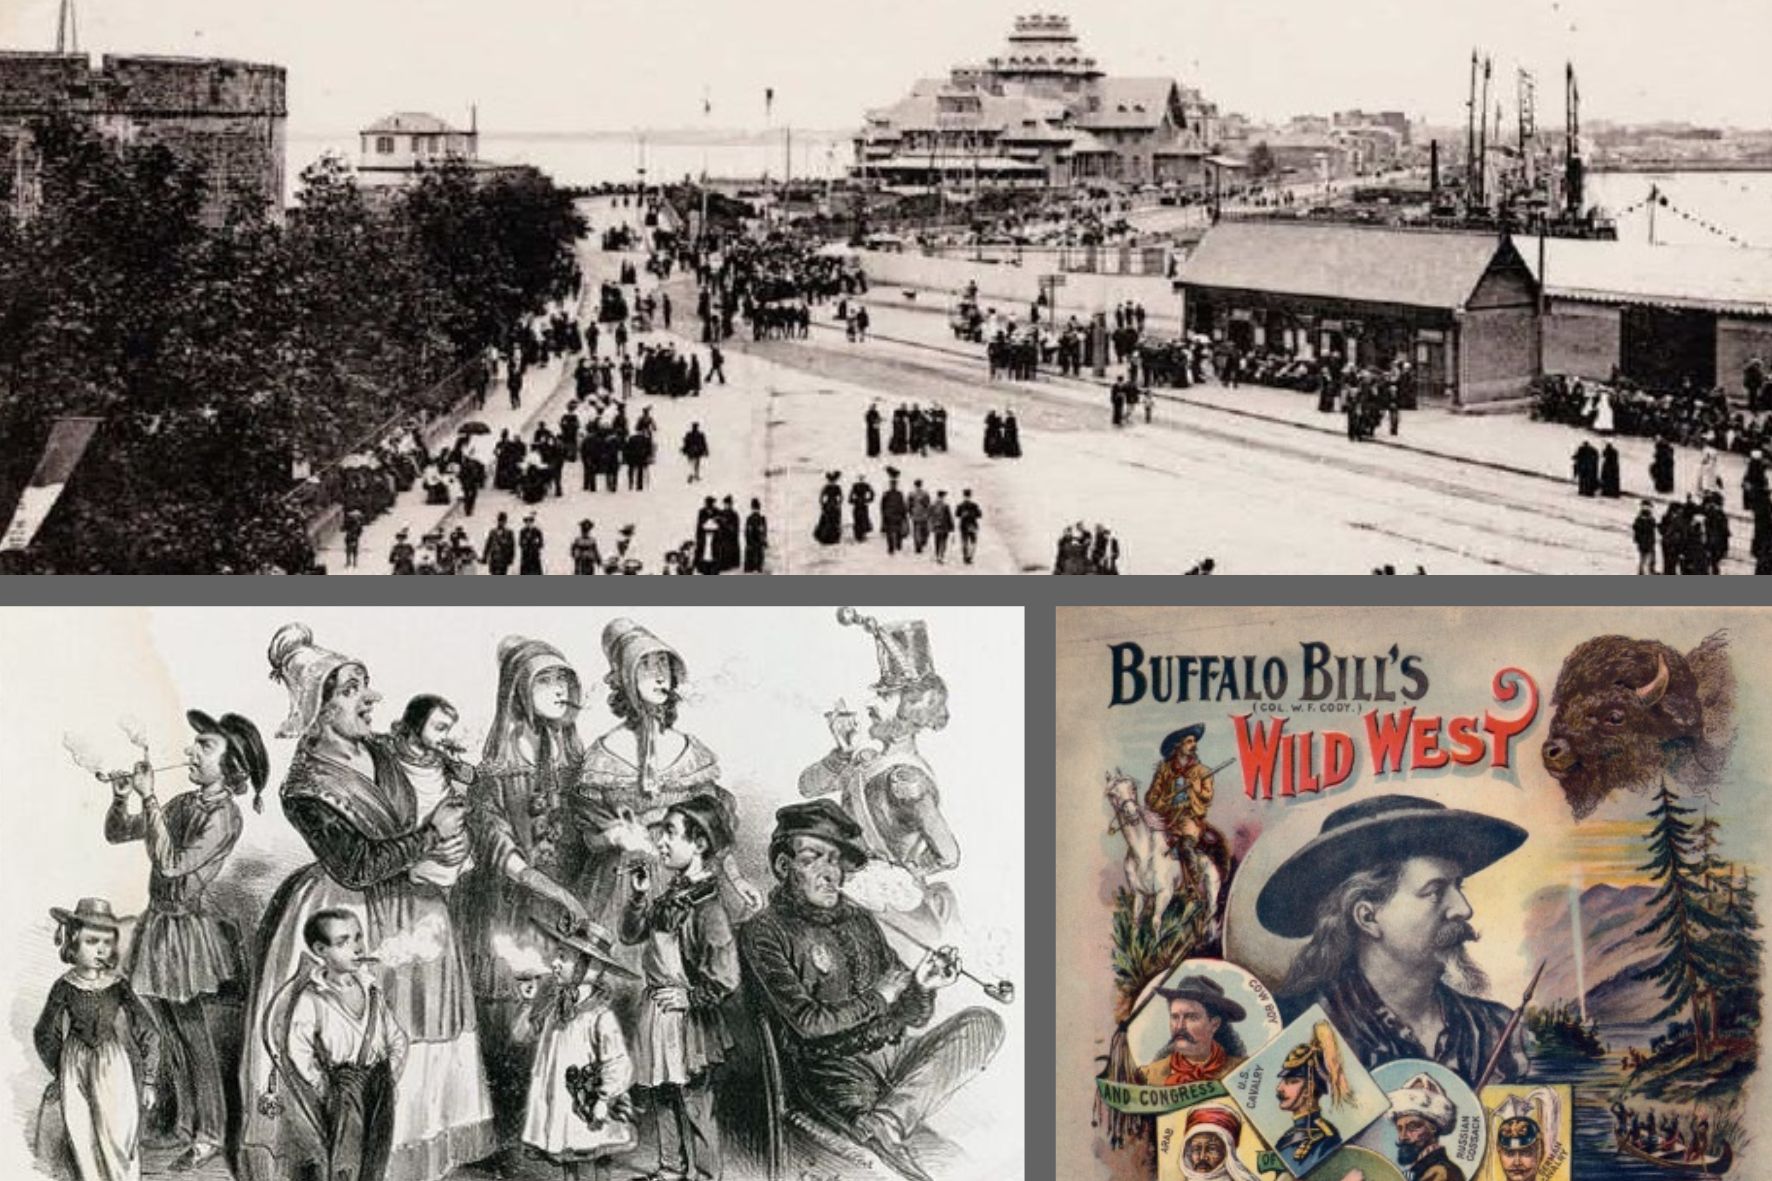 Carrousel d'image avec carte postale ancienne du casino de Saint-Malo, une caricature ancienne d'une famille en train de fumer et une affiche du spectacle de Buffalo Bill